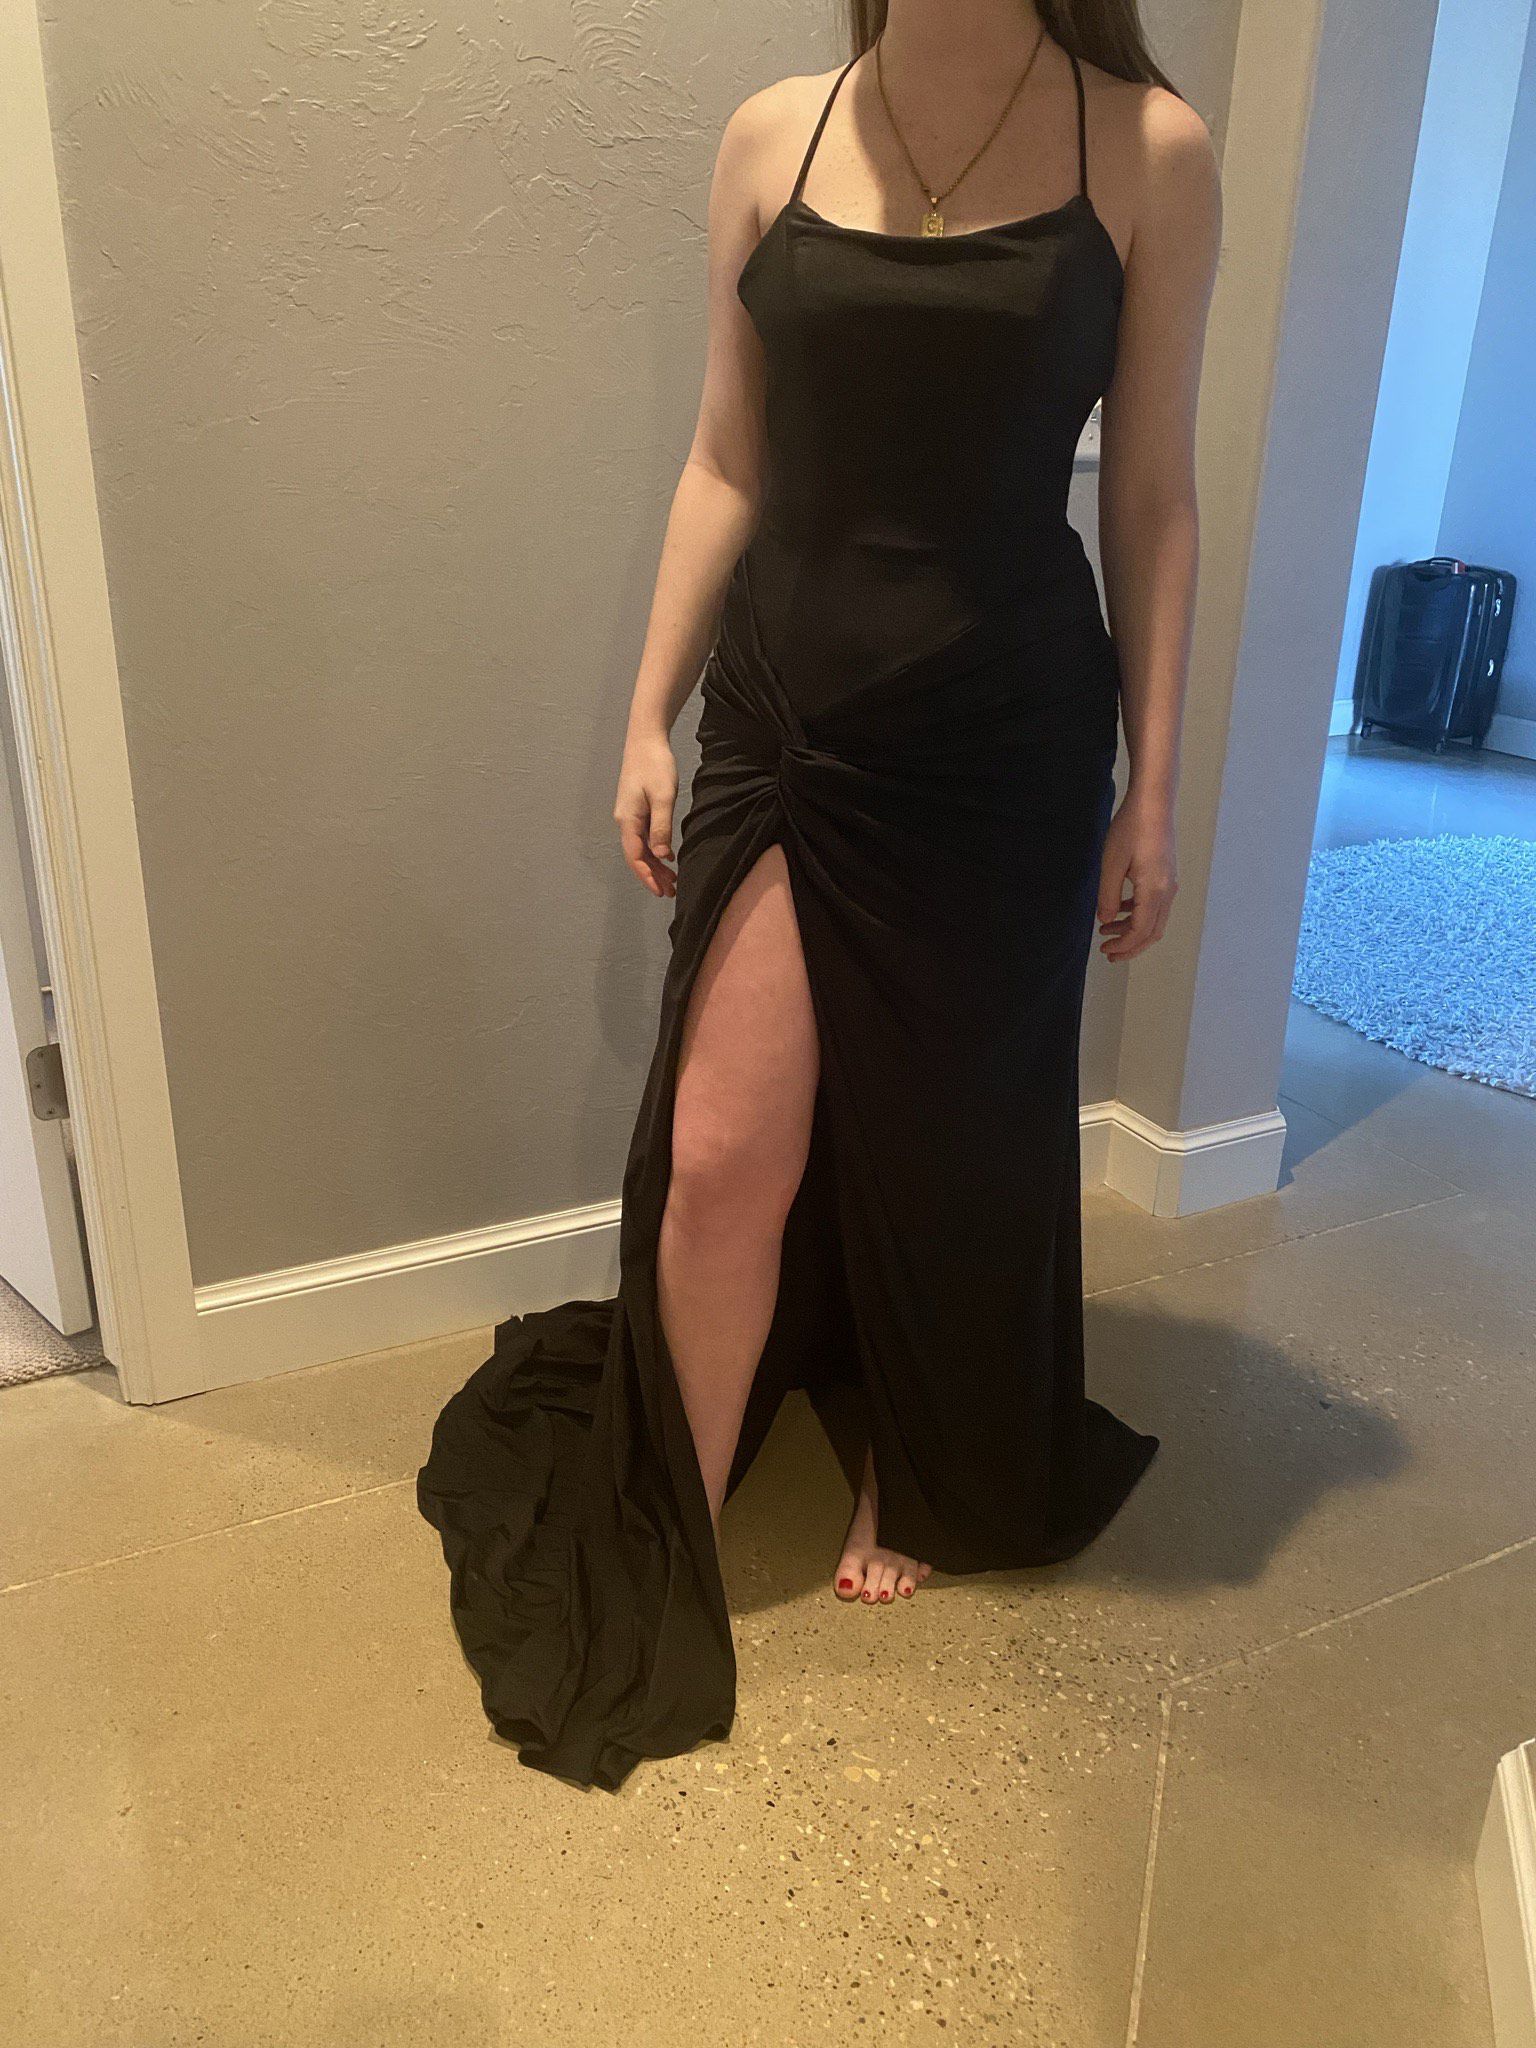 Ashley Lauren Size 2 Prom Halter Black Side Slit Dress on Queenly